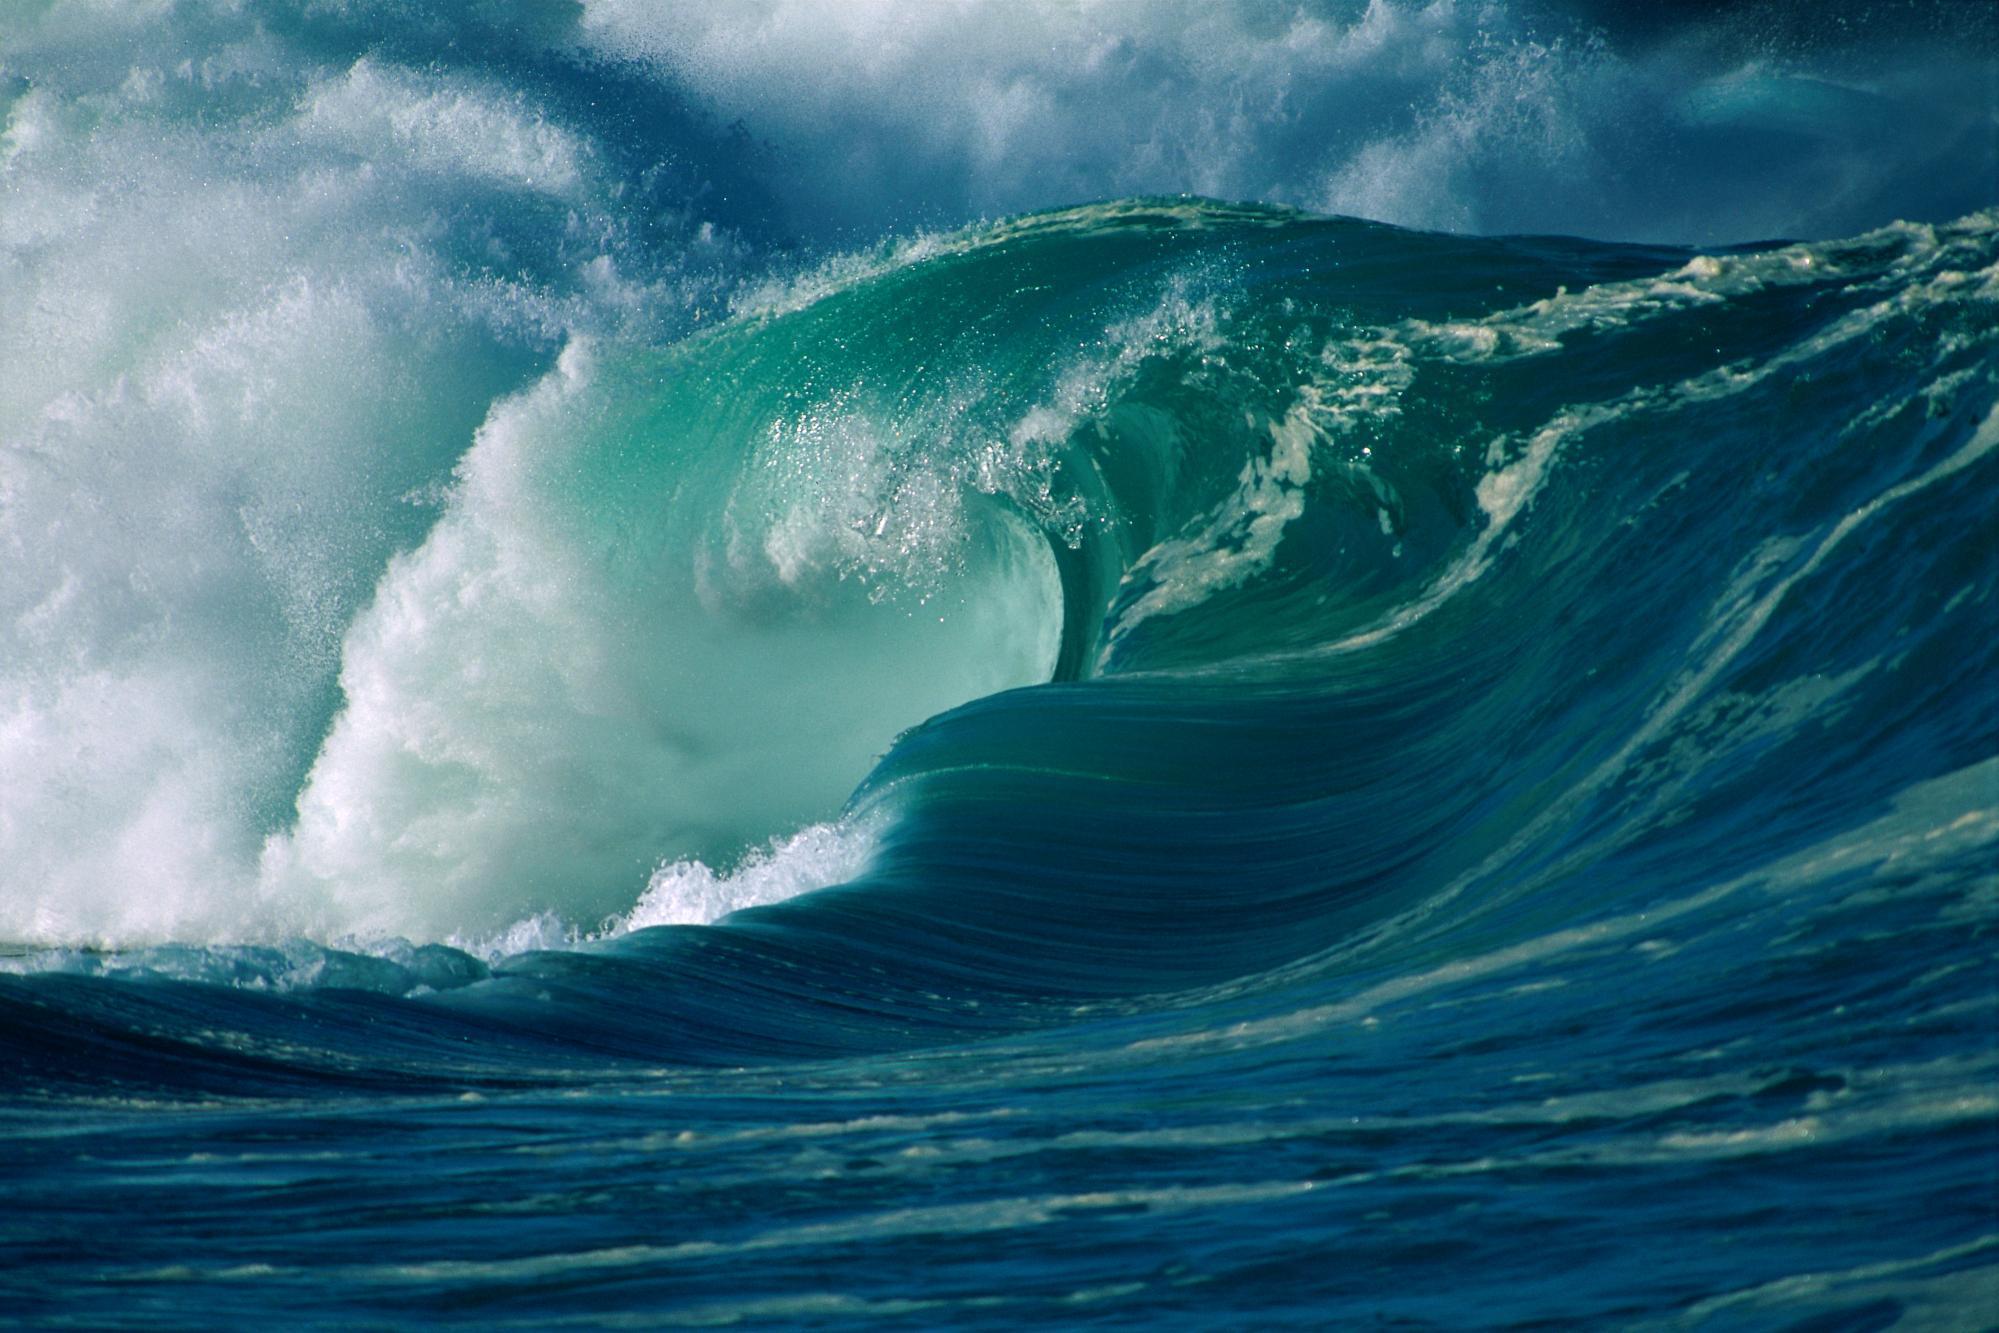 Ocean and big waves ocean waves free desktop background